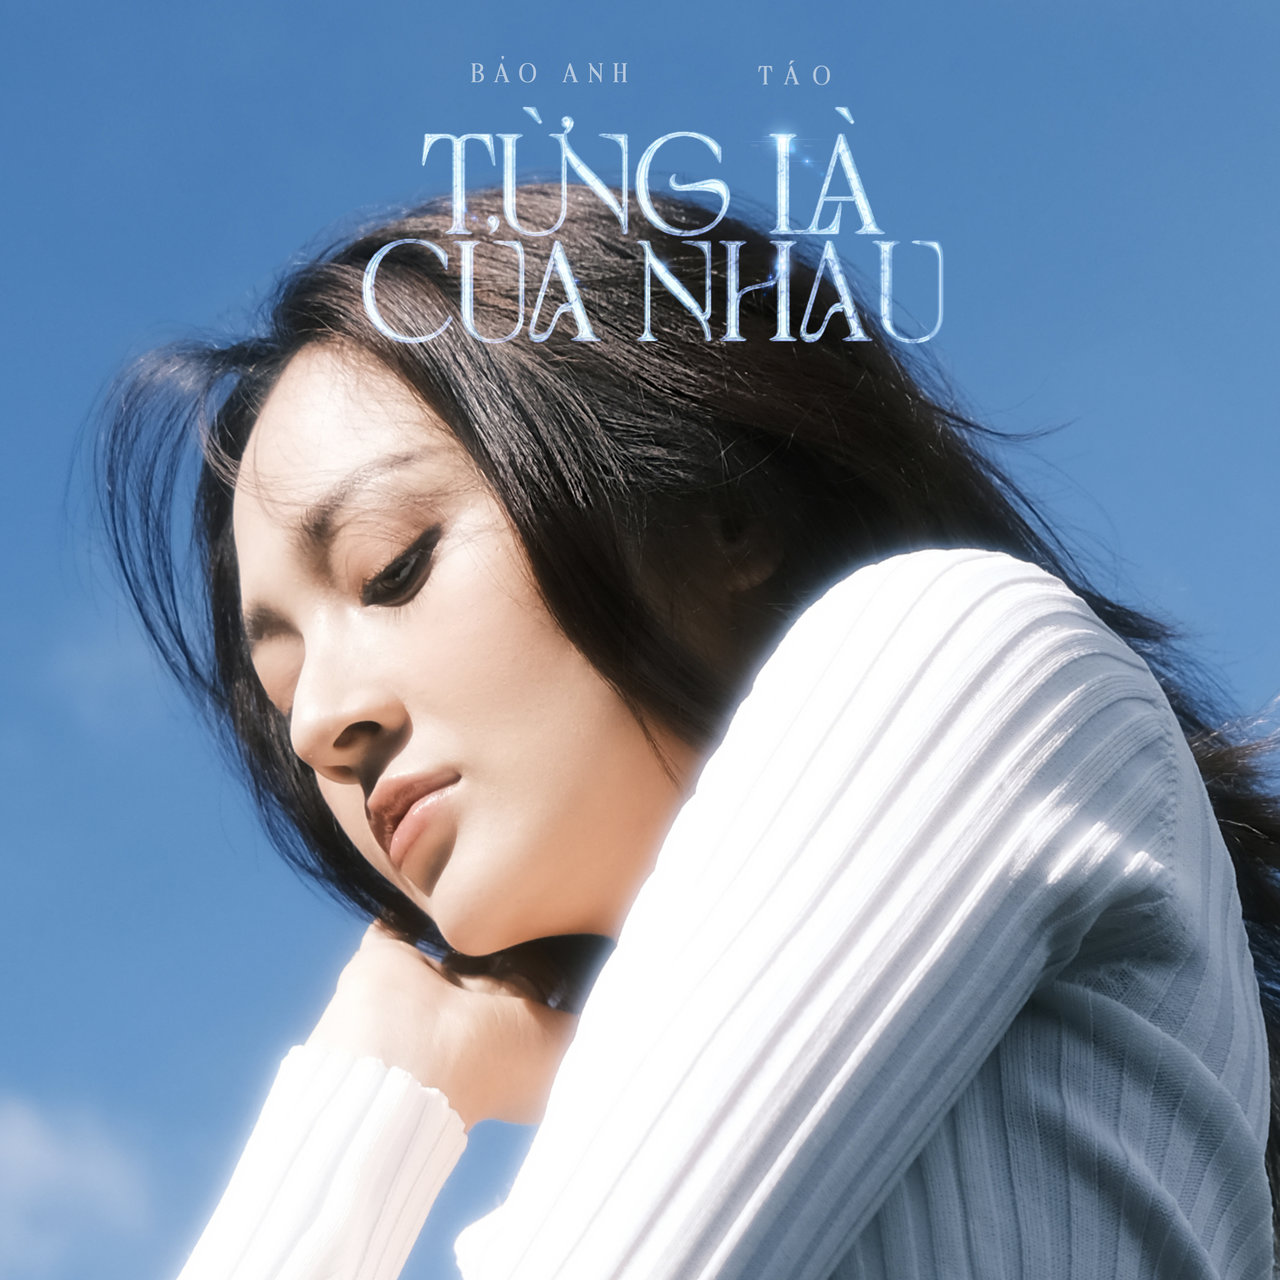 Bảo Anh featuring Táo — Từng Là Của Nhau cover artwork